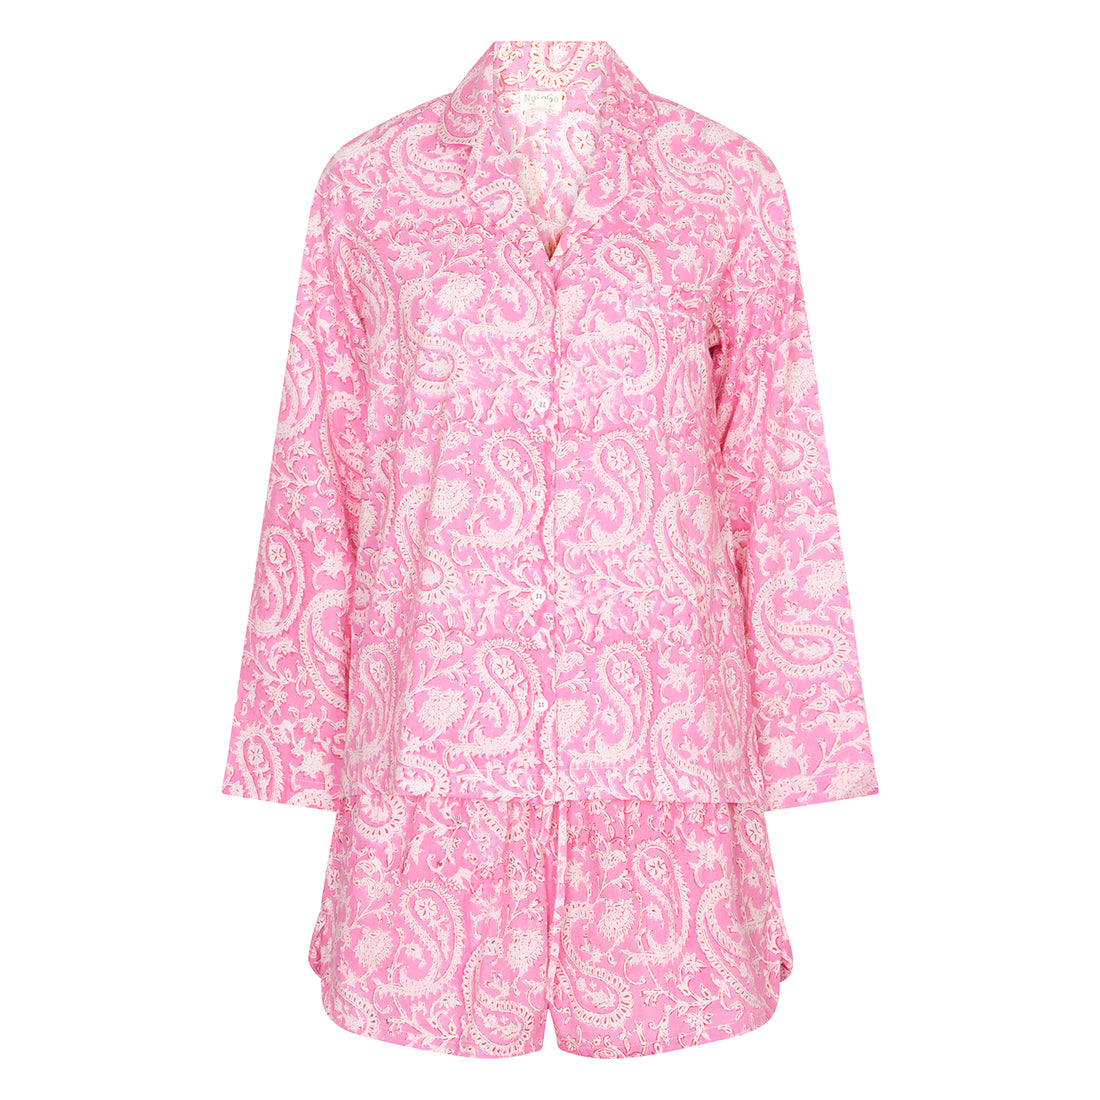 Hand Block Printed Cotton PJ Shorts set - Pink Paisley